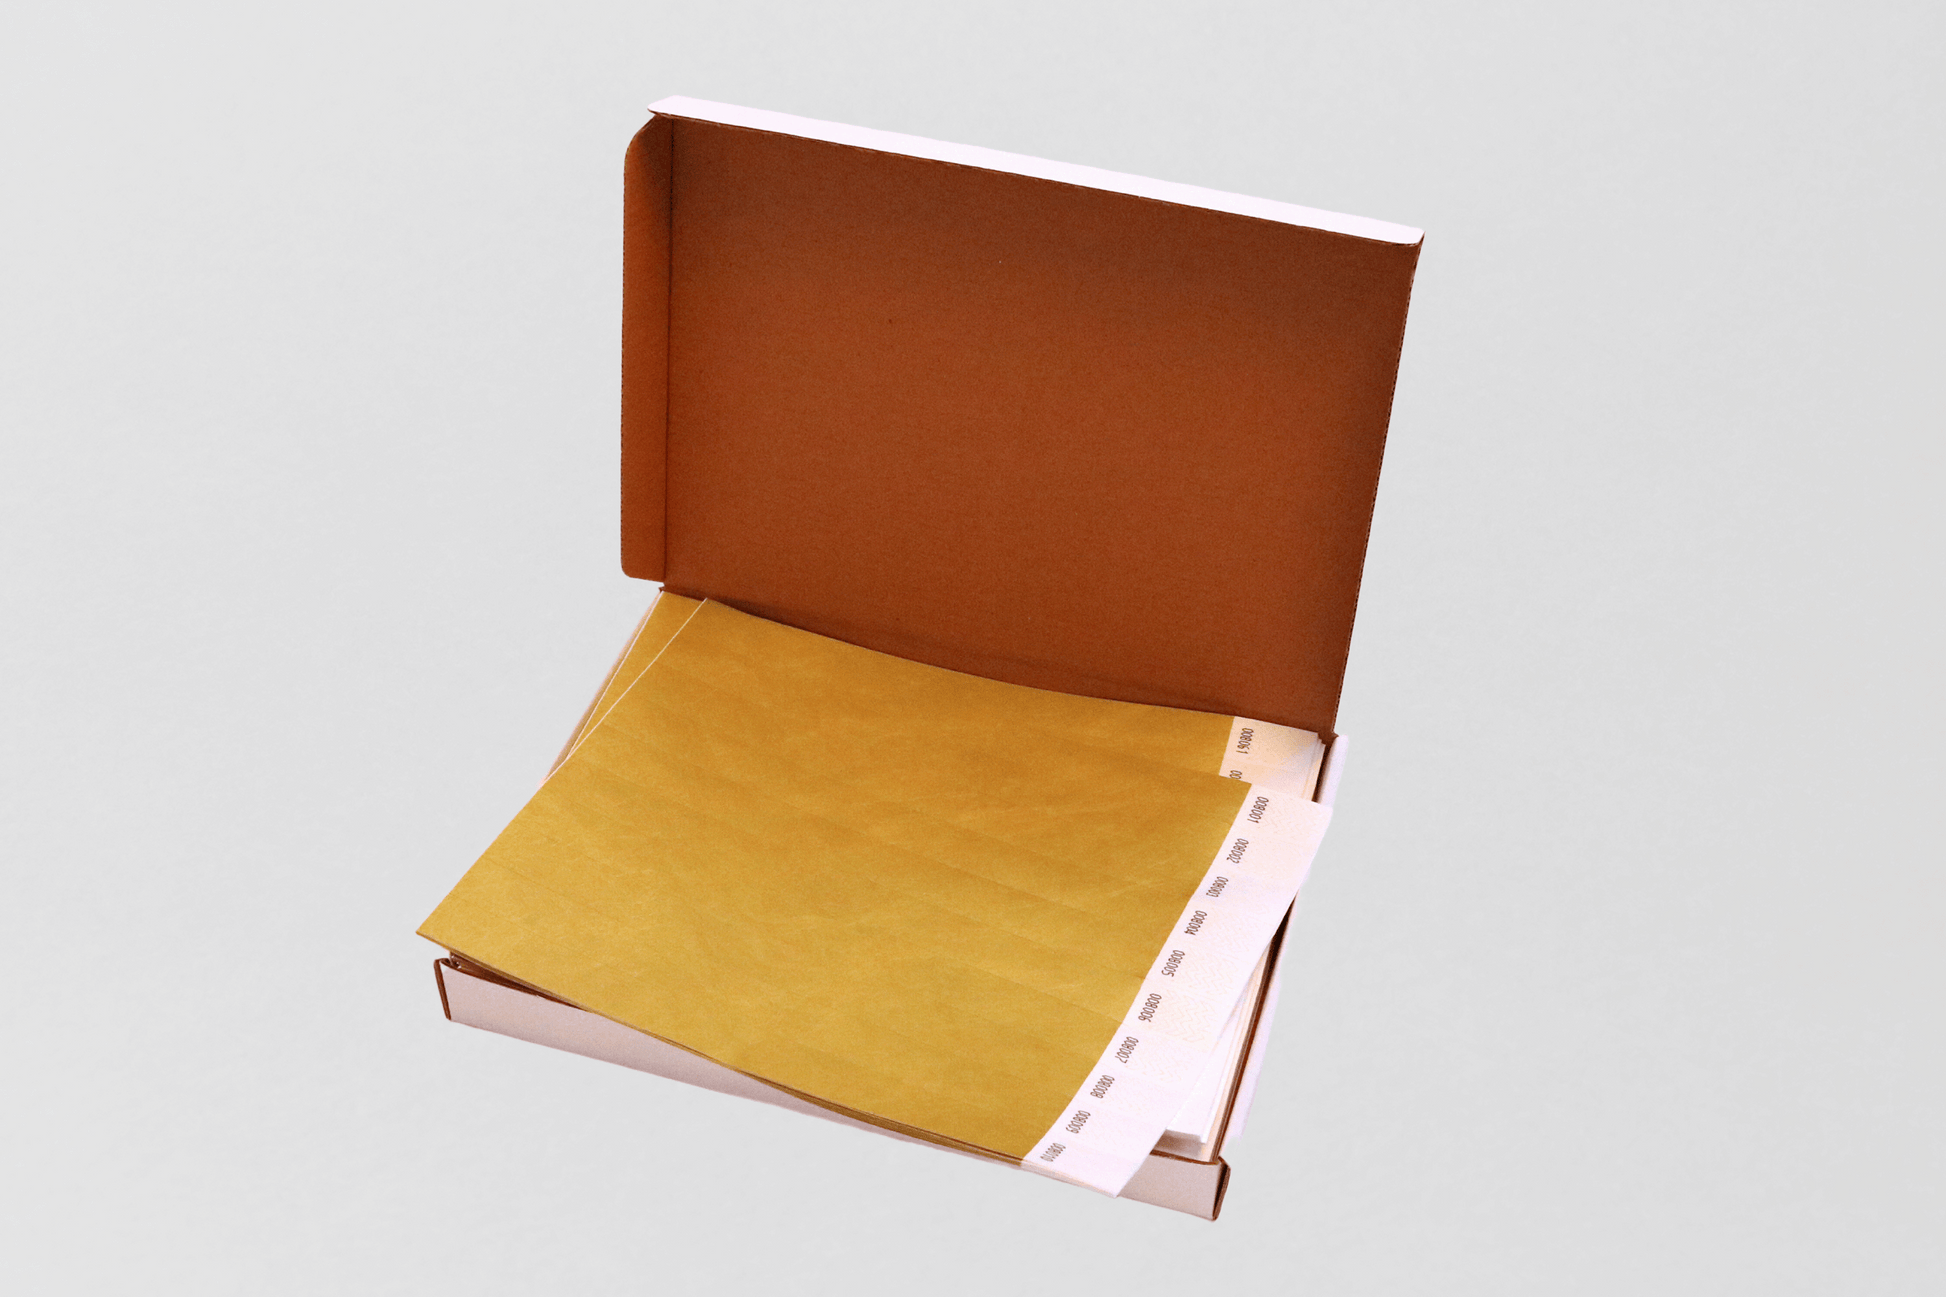 En Pappers armbandslåda med 1000- vanligt lager i brun låda.